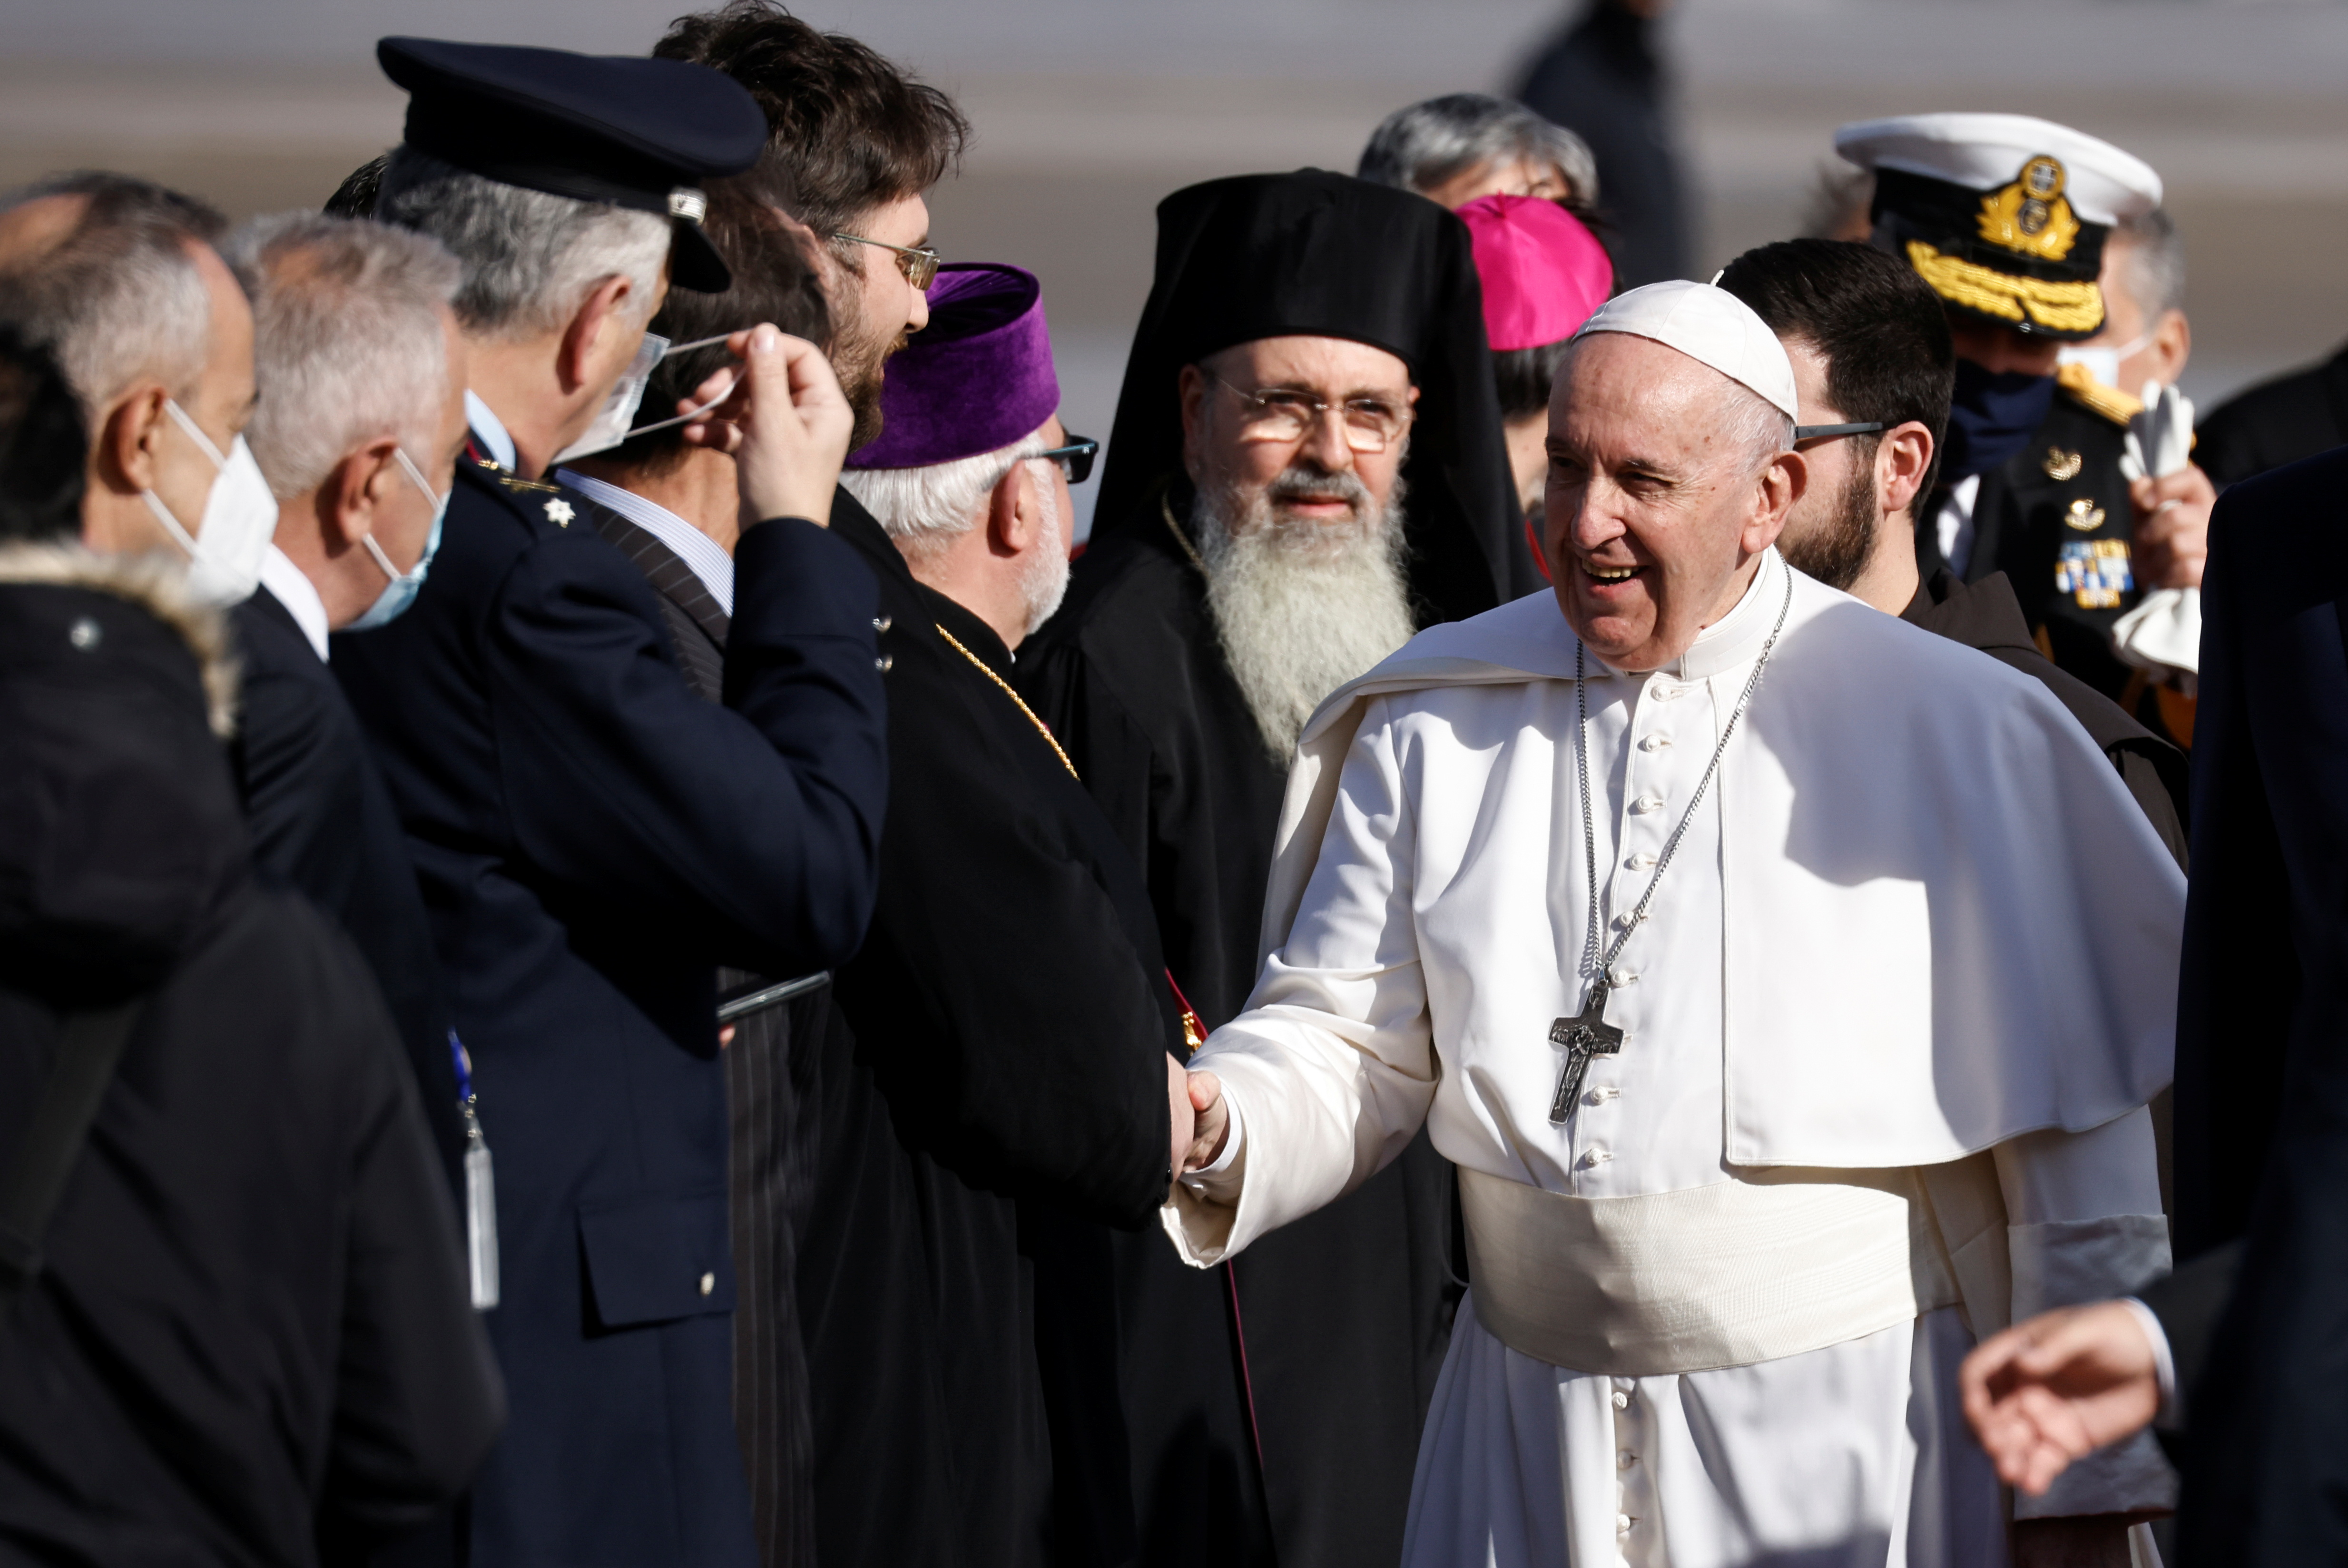 El papa Francisco saluda a la gente a su llegada al Aeropuerto Internacional de Atenas en Atenas, Grecia, el 4 de diciembre de 2021. REUTERS/Alkis Konstantinidis